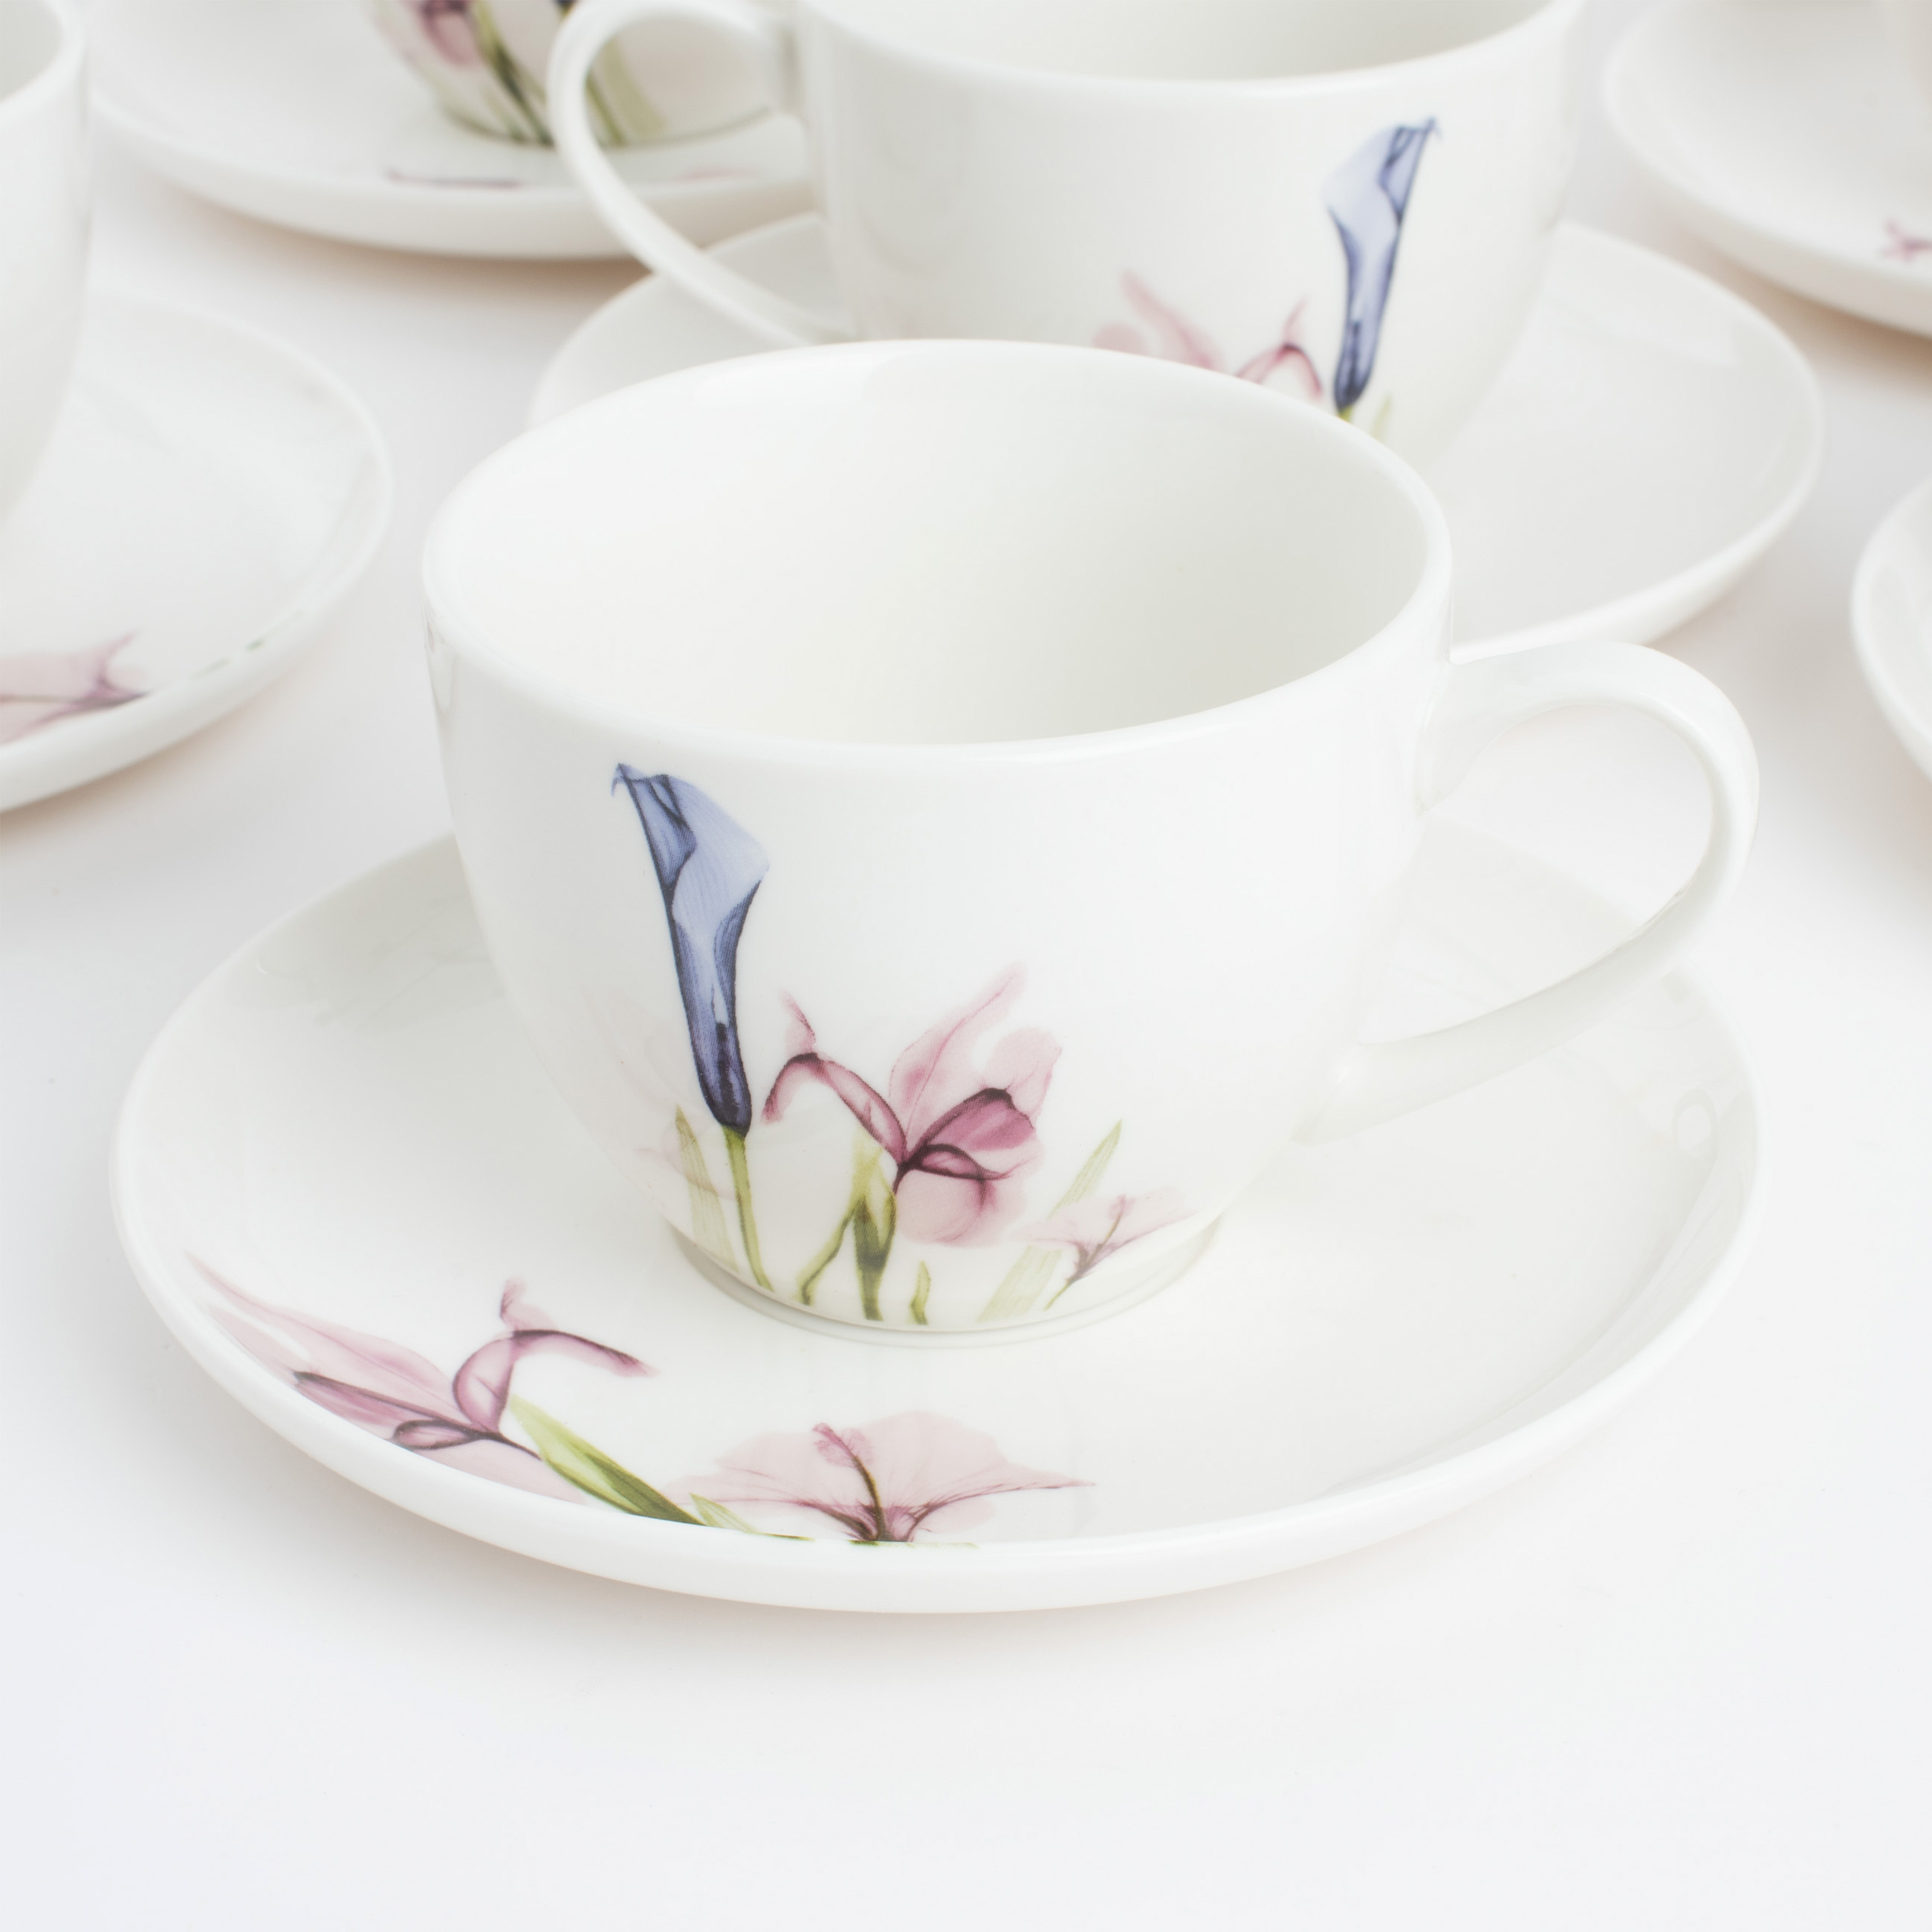 Пара чайная, 6 перс, 12 пр, 220 мл, фарфор N, белая, Пастельные цветы, Pastel flowers изображение № 4